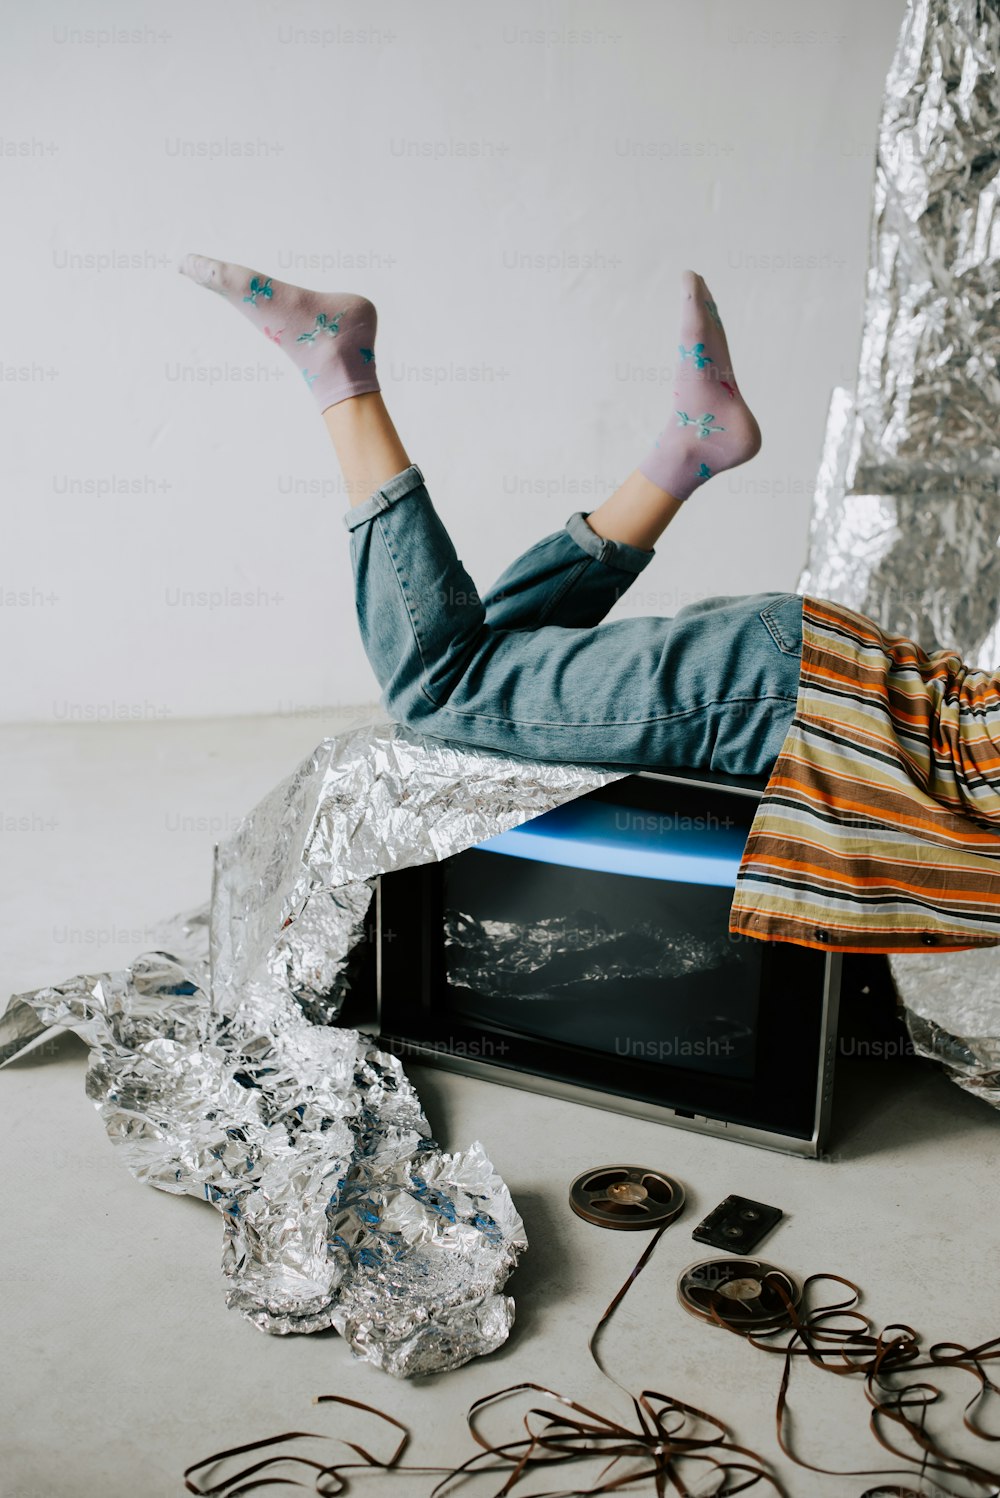 Un uomo sdraiato sopra un forno a microonde coperto di carta stagnola